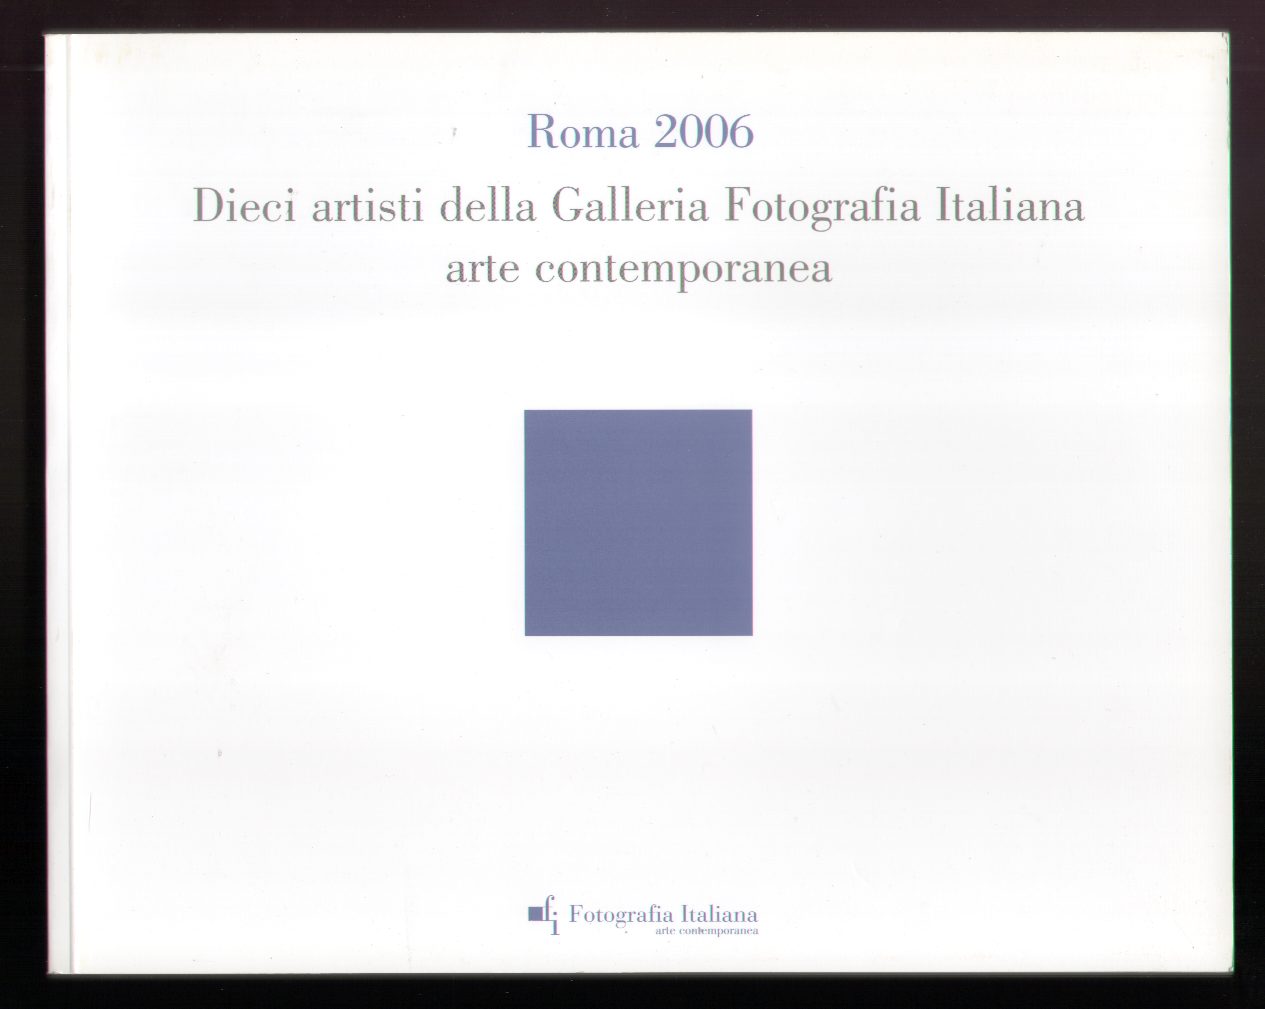 Dieci artisti della Galleria Fotografia Italiana arte contemporanea (c3)